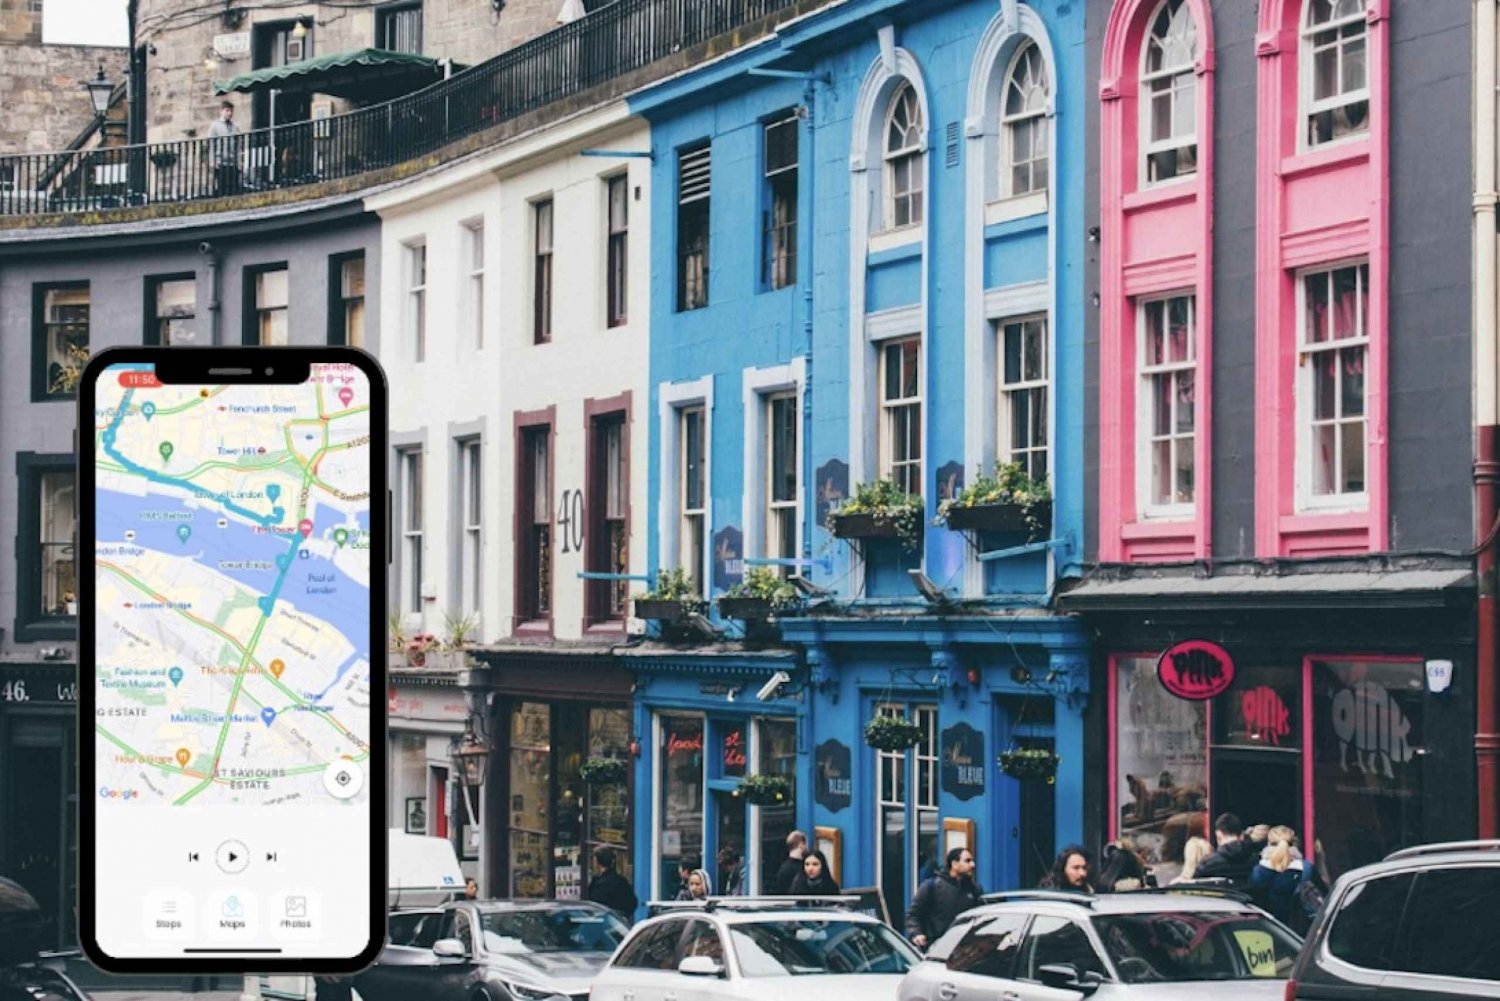 Edinburgh Harry Potter: zelf rondleiding met smartphone app